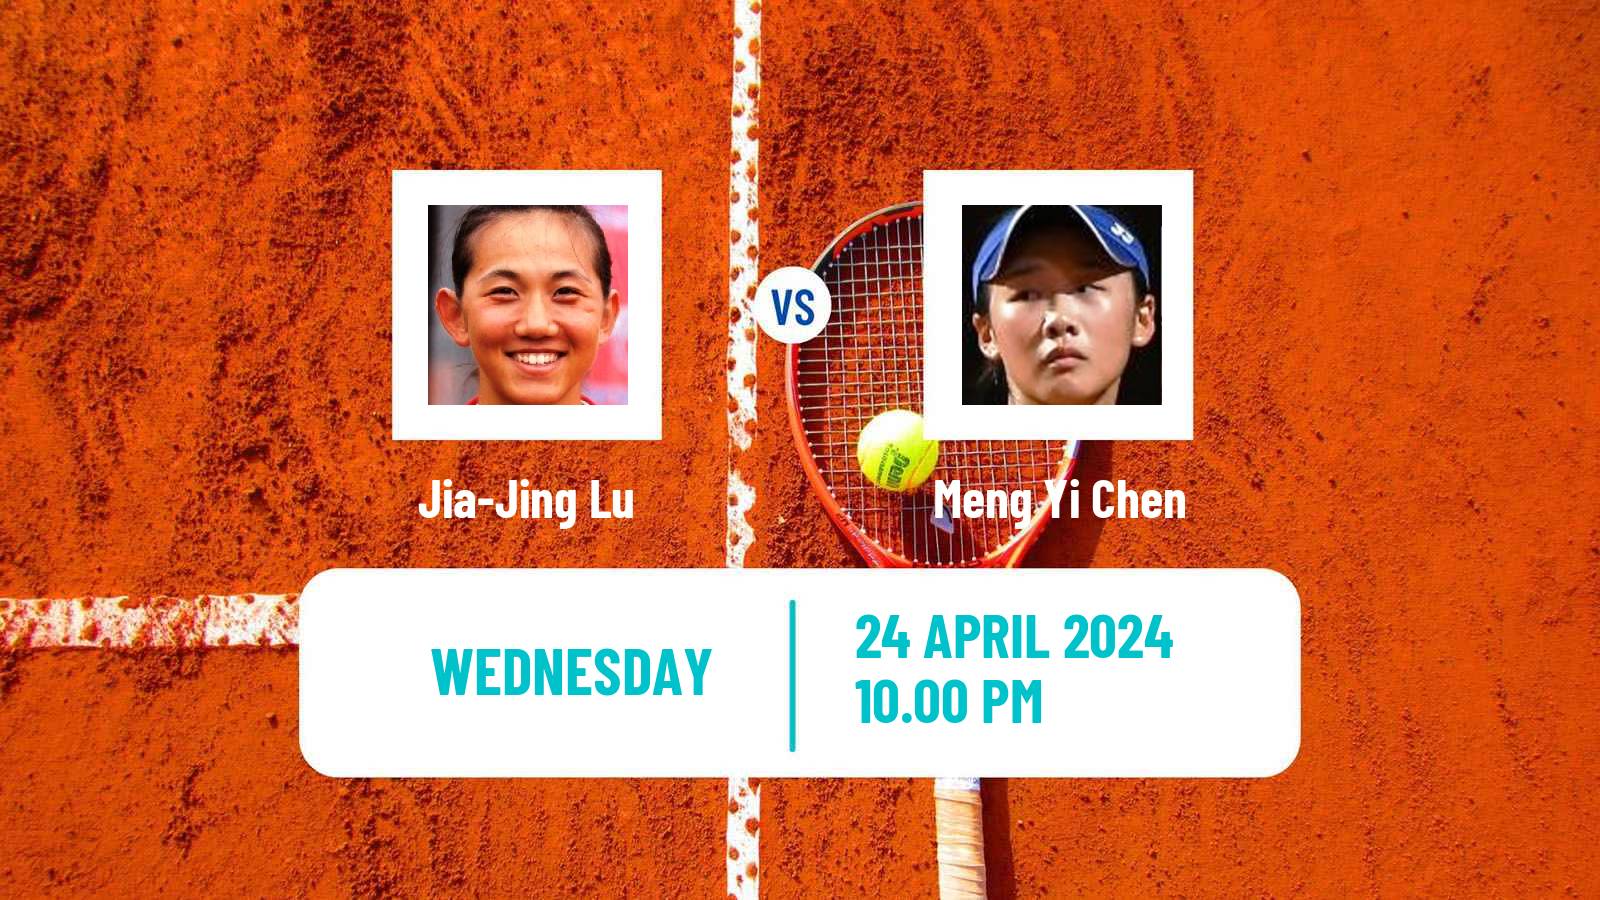 Tennis ITF W50 Wuning Women Jia-Jing Lu - Meng Yi Chen